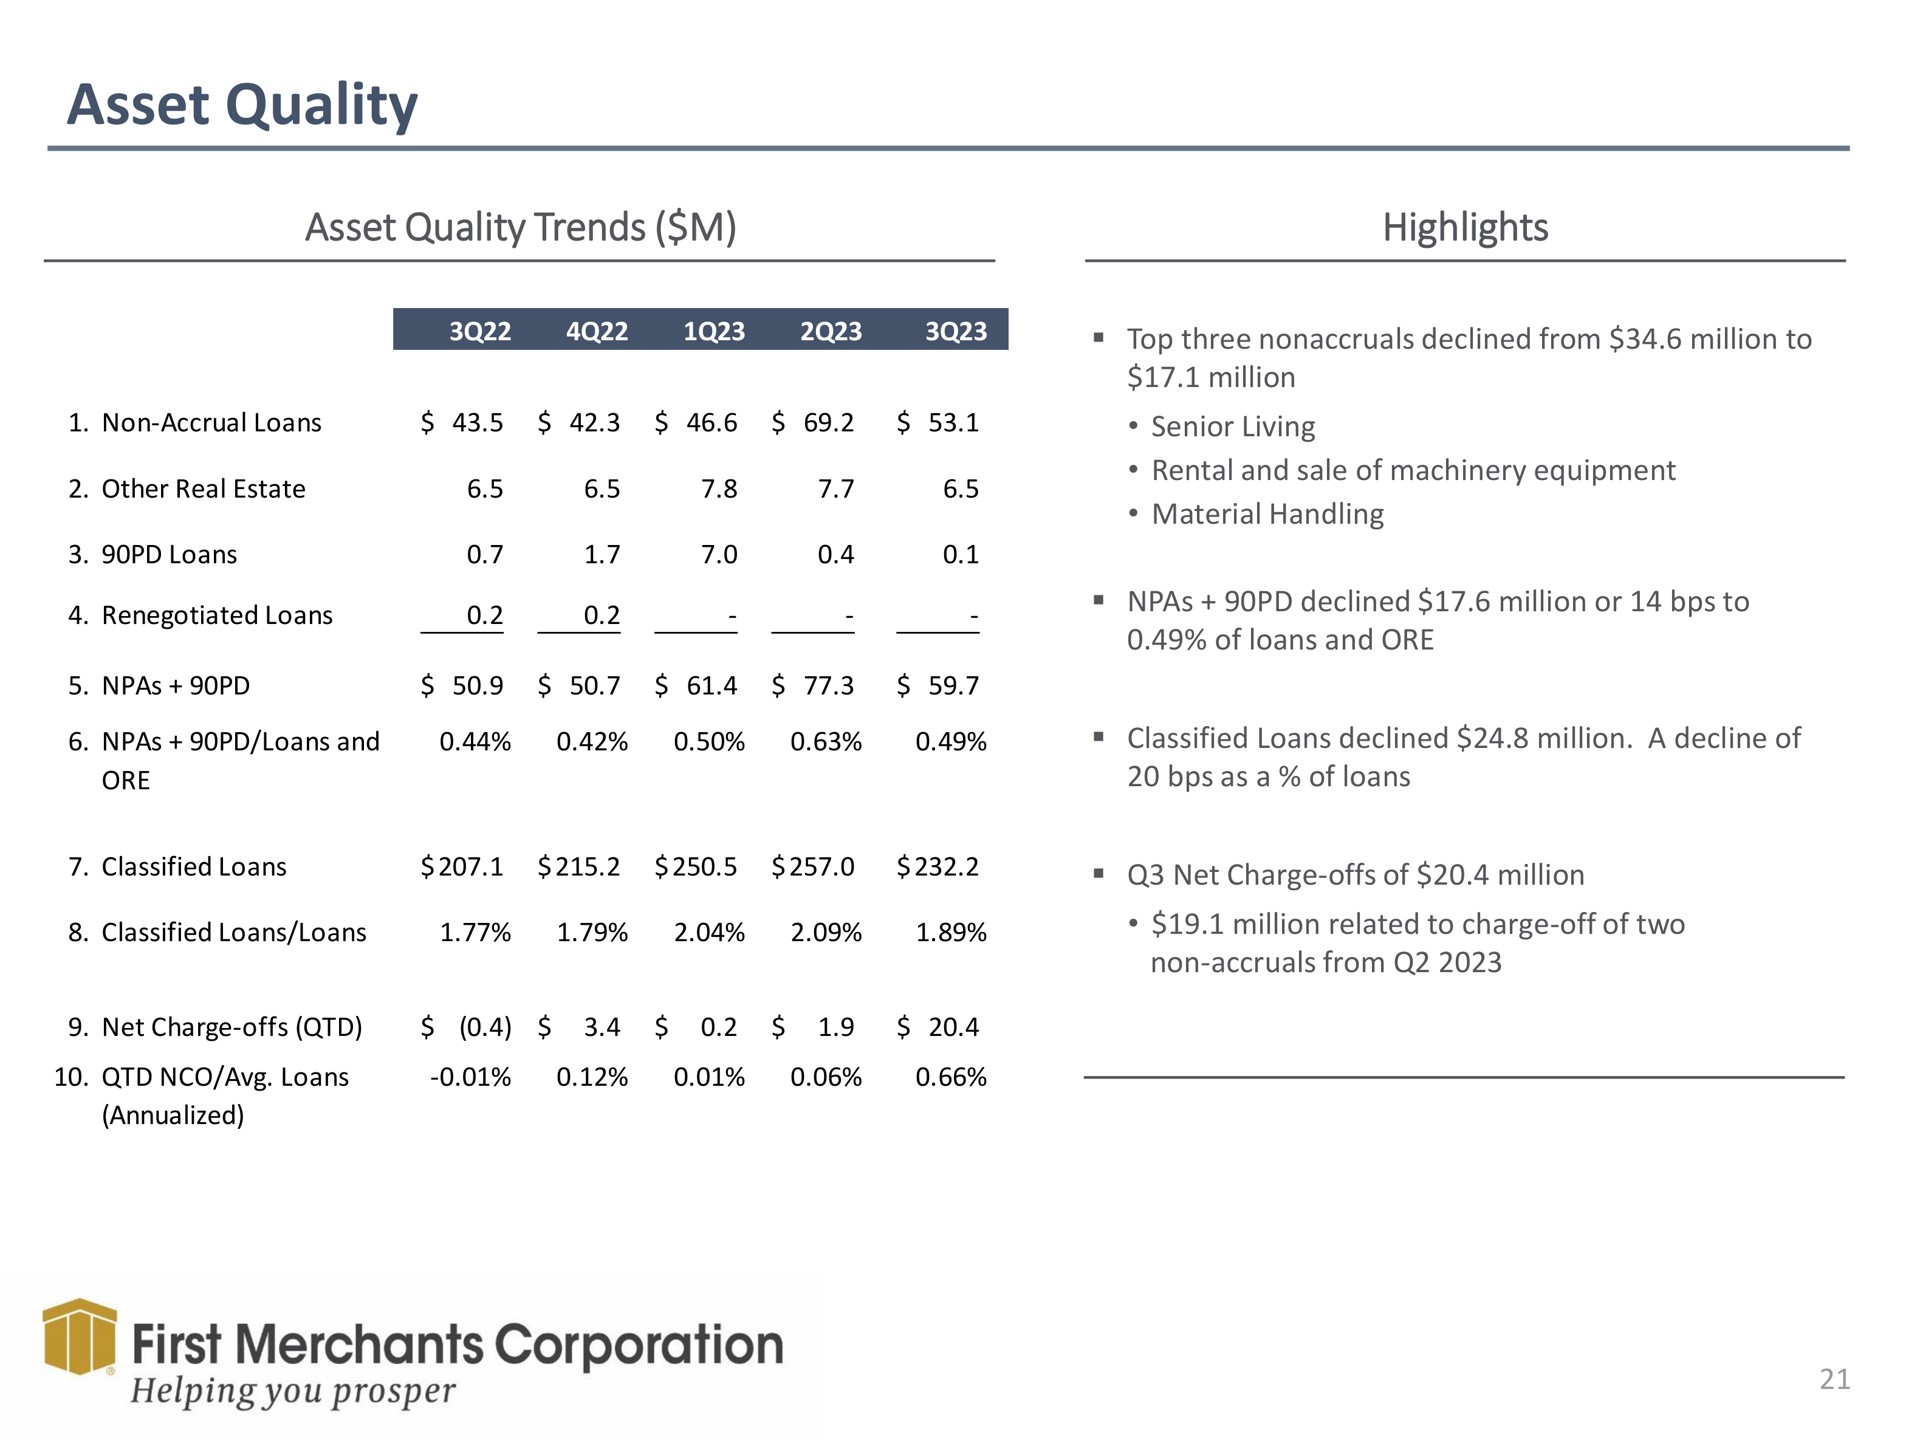 asset quality asset quality trends highlights first merchants corporation helping you prosper | First Merchants